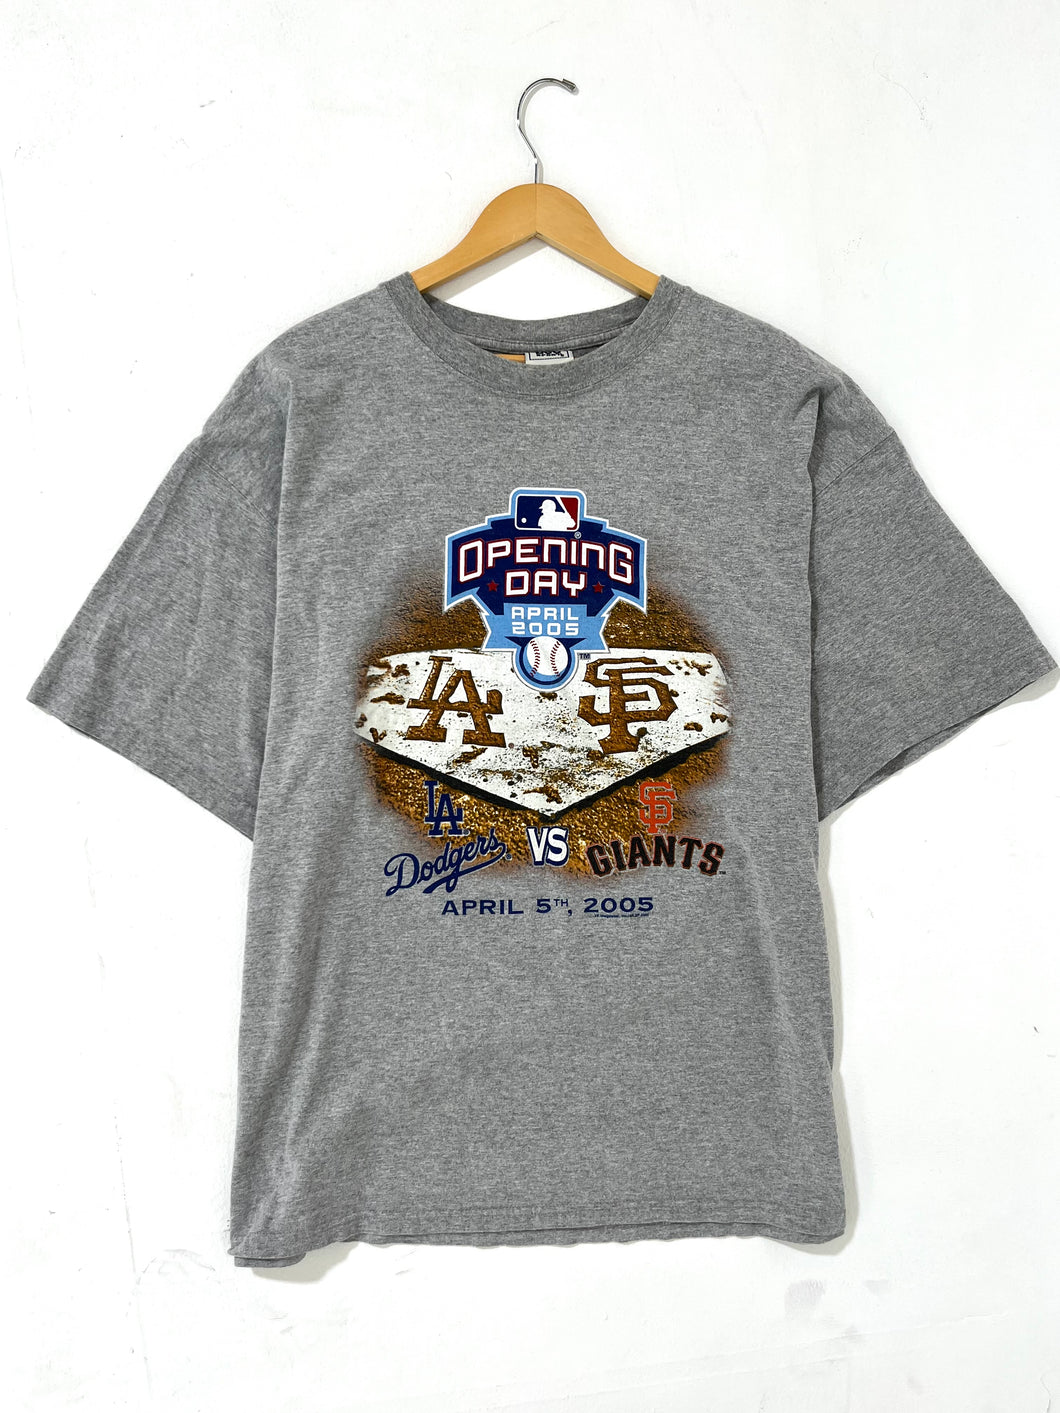 MLB Opening Day 2005 T-Shirt Sz. 2XL